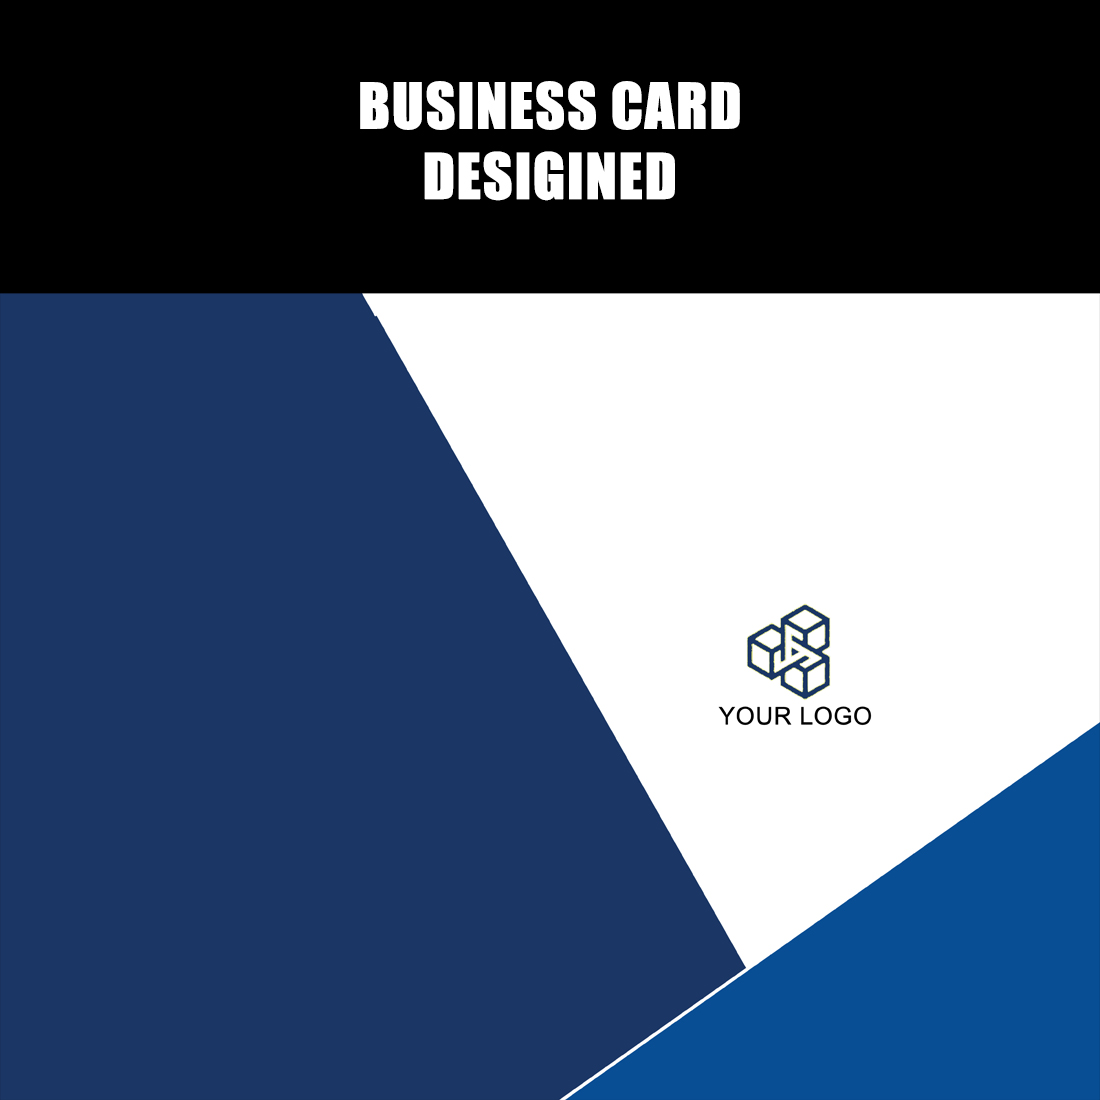 Unique Business Card Design preview image.